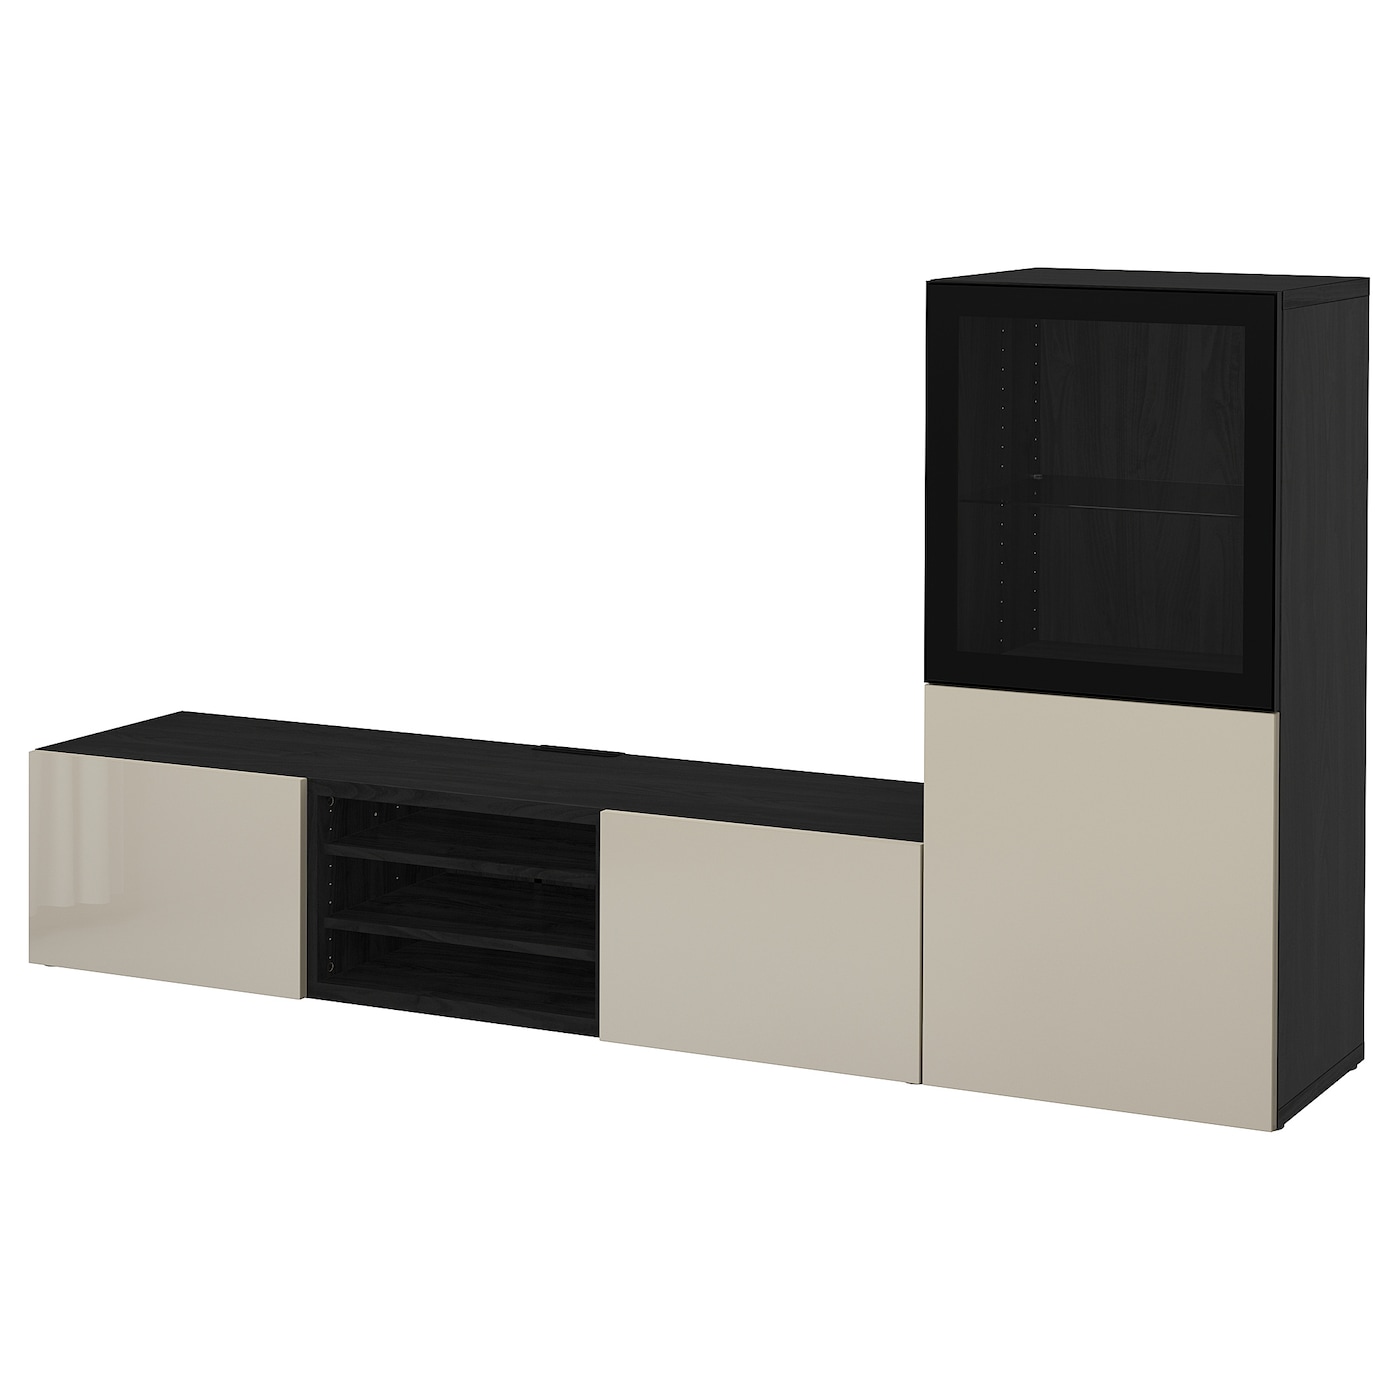 Комбинация для хранения ТВ - IKEA BESTÅ/BESTA, 129x42x240см, черный/светло-коричневый, БЕСТО ИКЕА